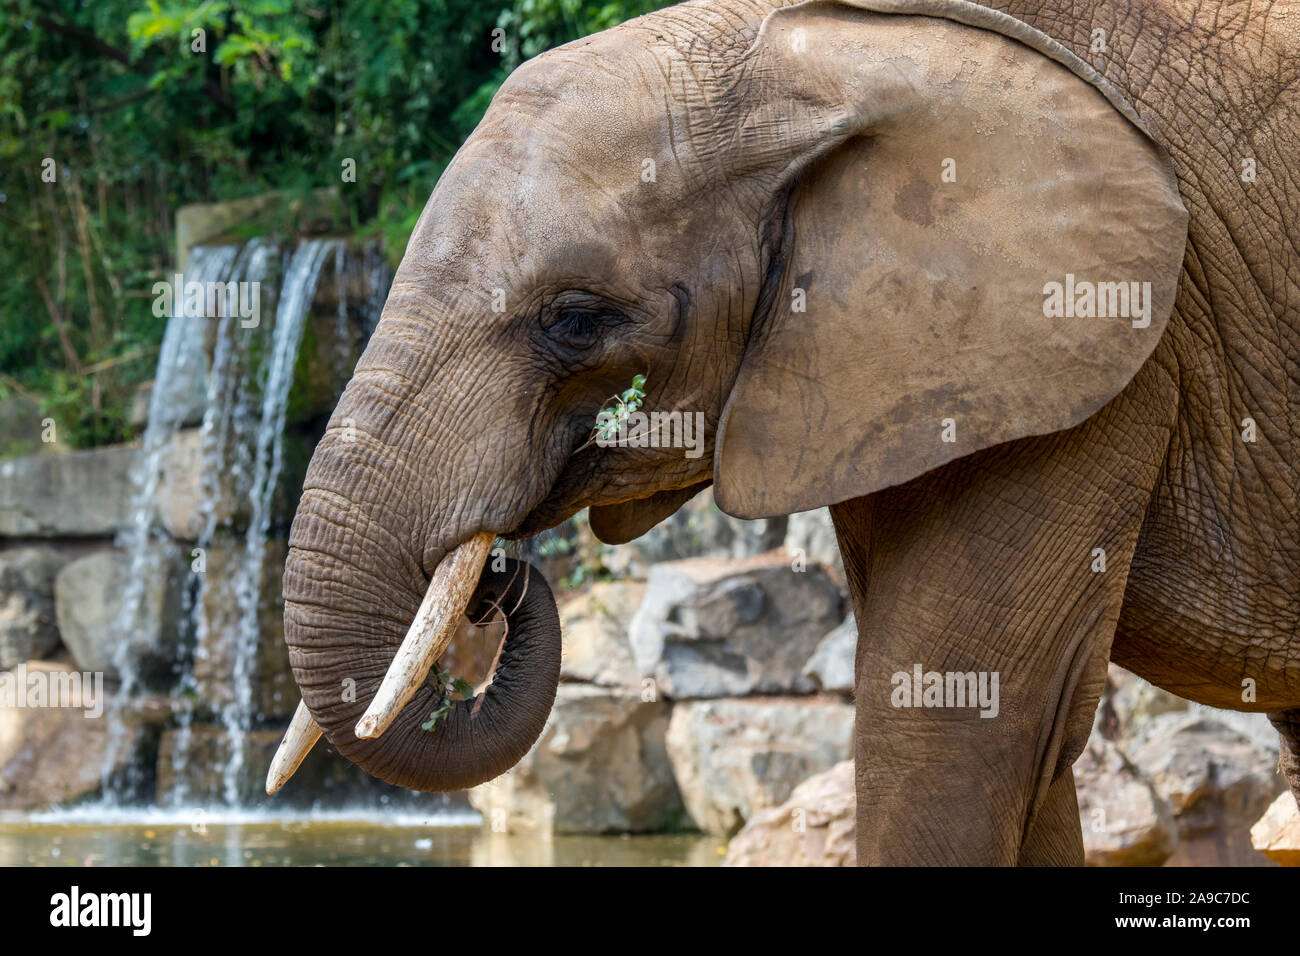 Elefante africano (Loxodonta) comiendo ramitas con el tronco en el Zoo de la Flèche, parque zoológico en Pays de la Loire, Francia Foto de stock